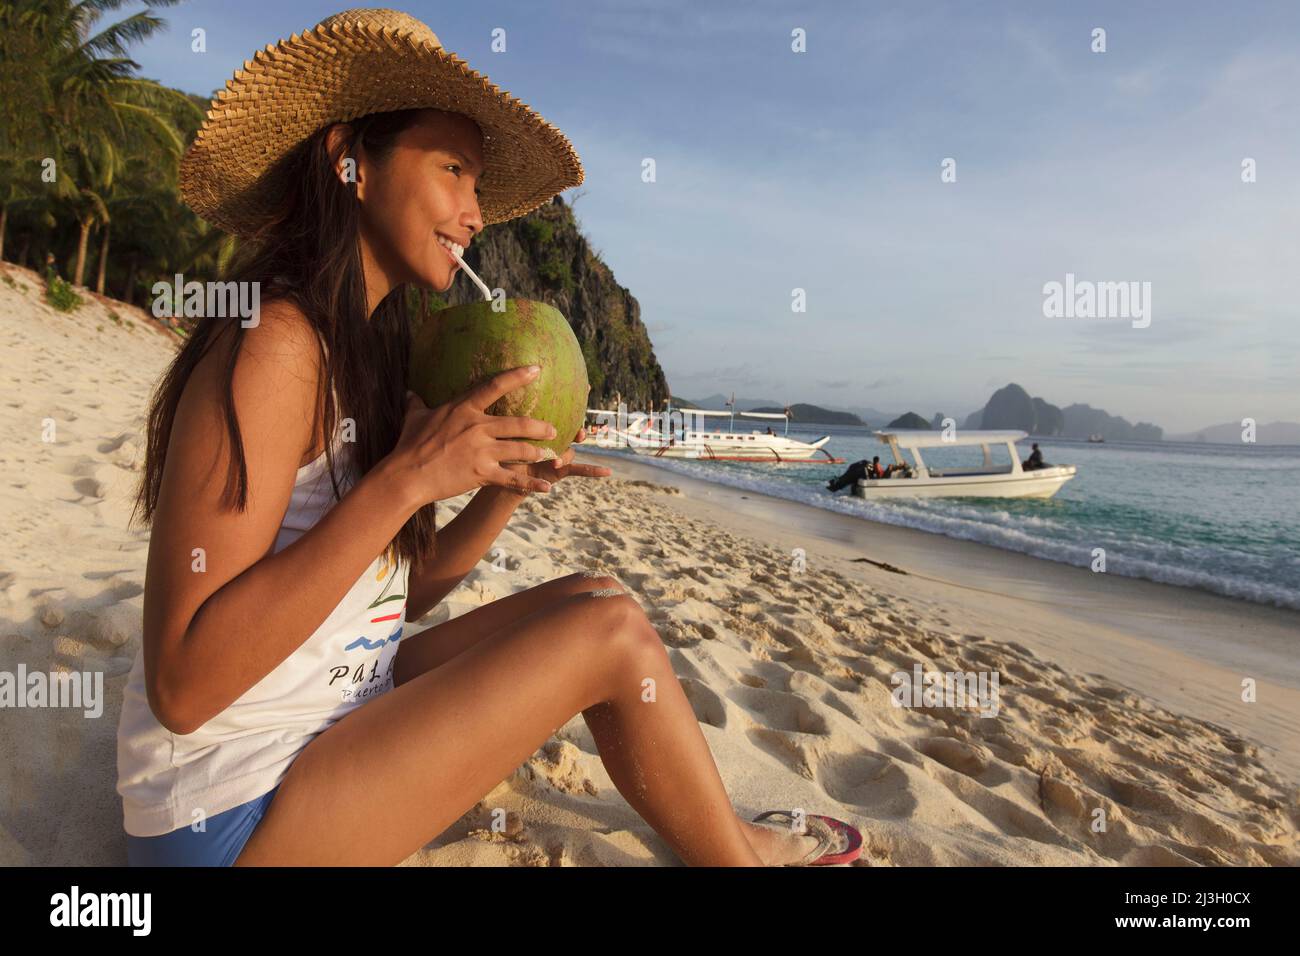 Philippinen, Palawan, El Nido, Bacuit-Archipel, Seven Commandos Beach, Eine junge philippinische Frau sitzt am Strand und trinkt aus einer Kokosnuss mit einem Stroh Stockfoto